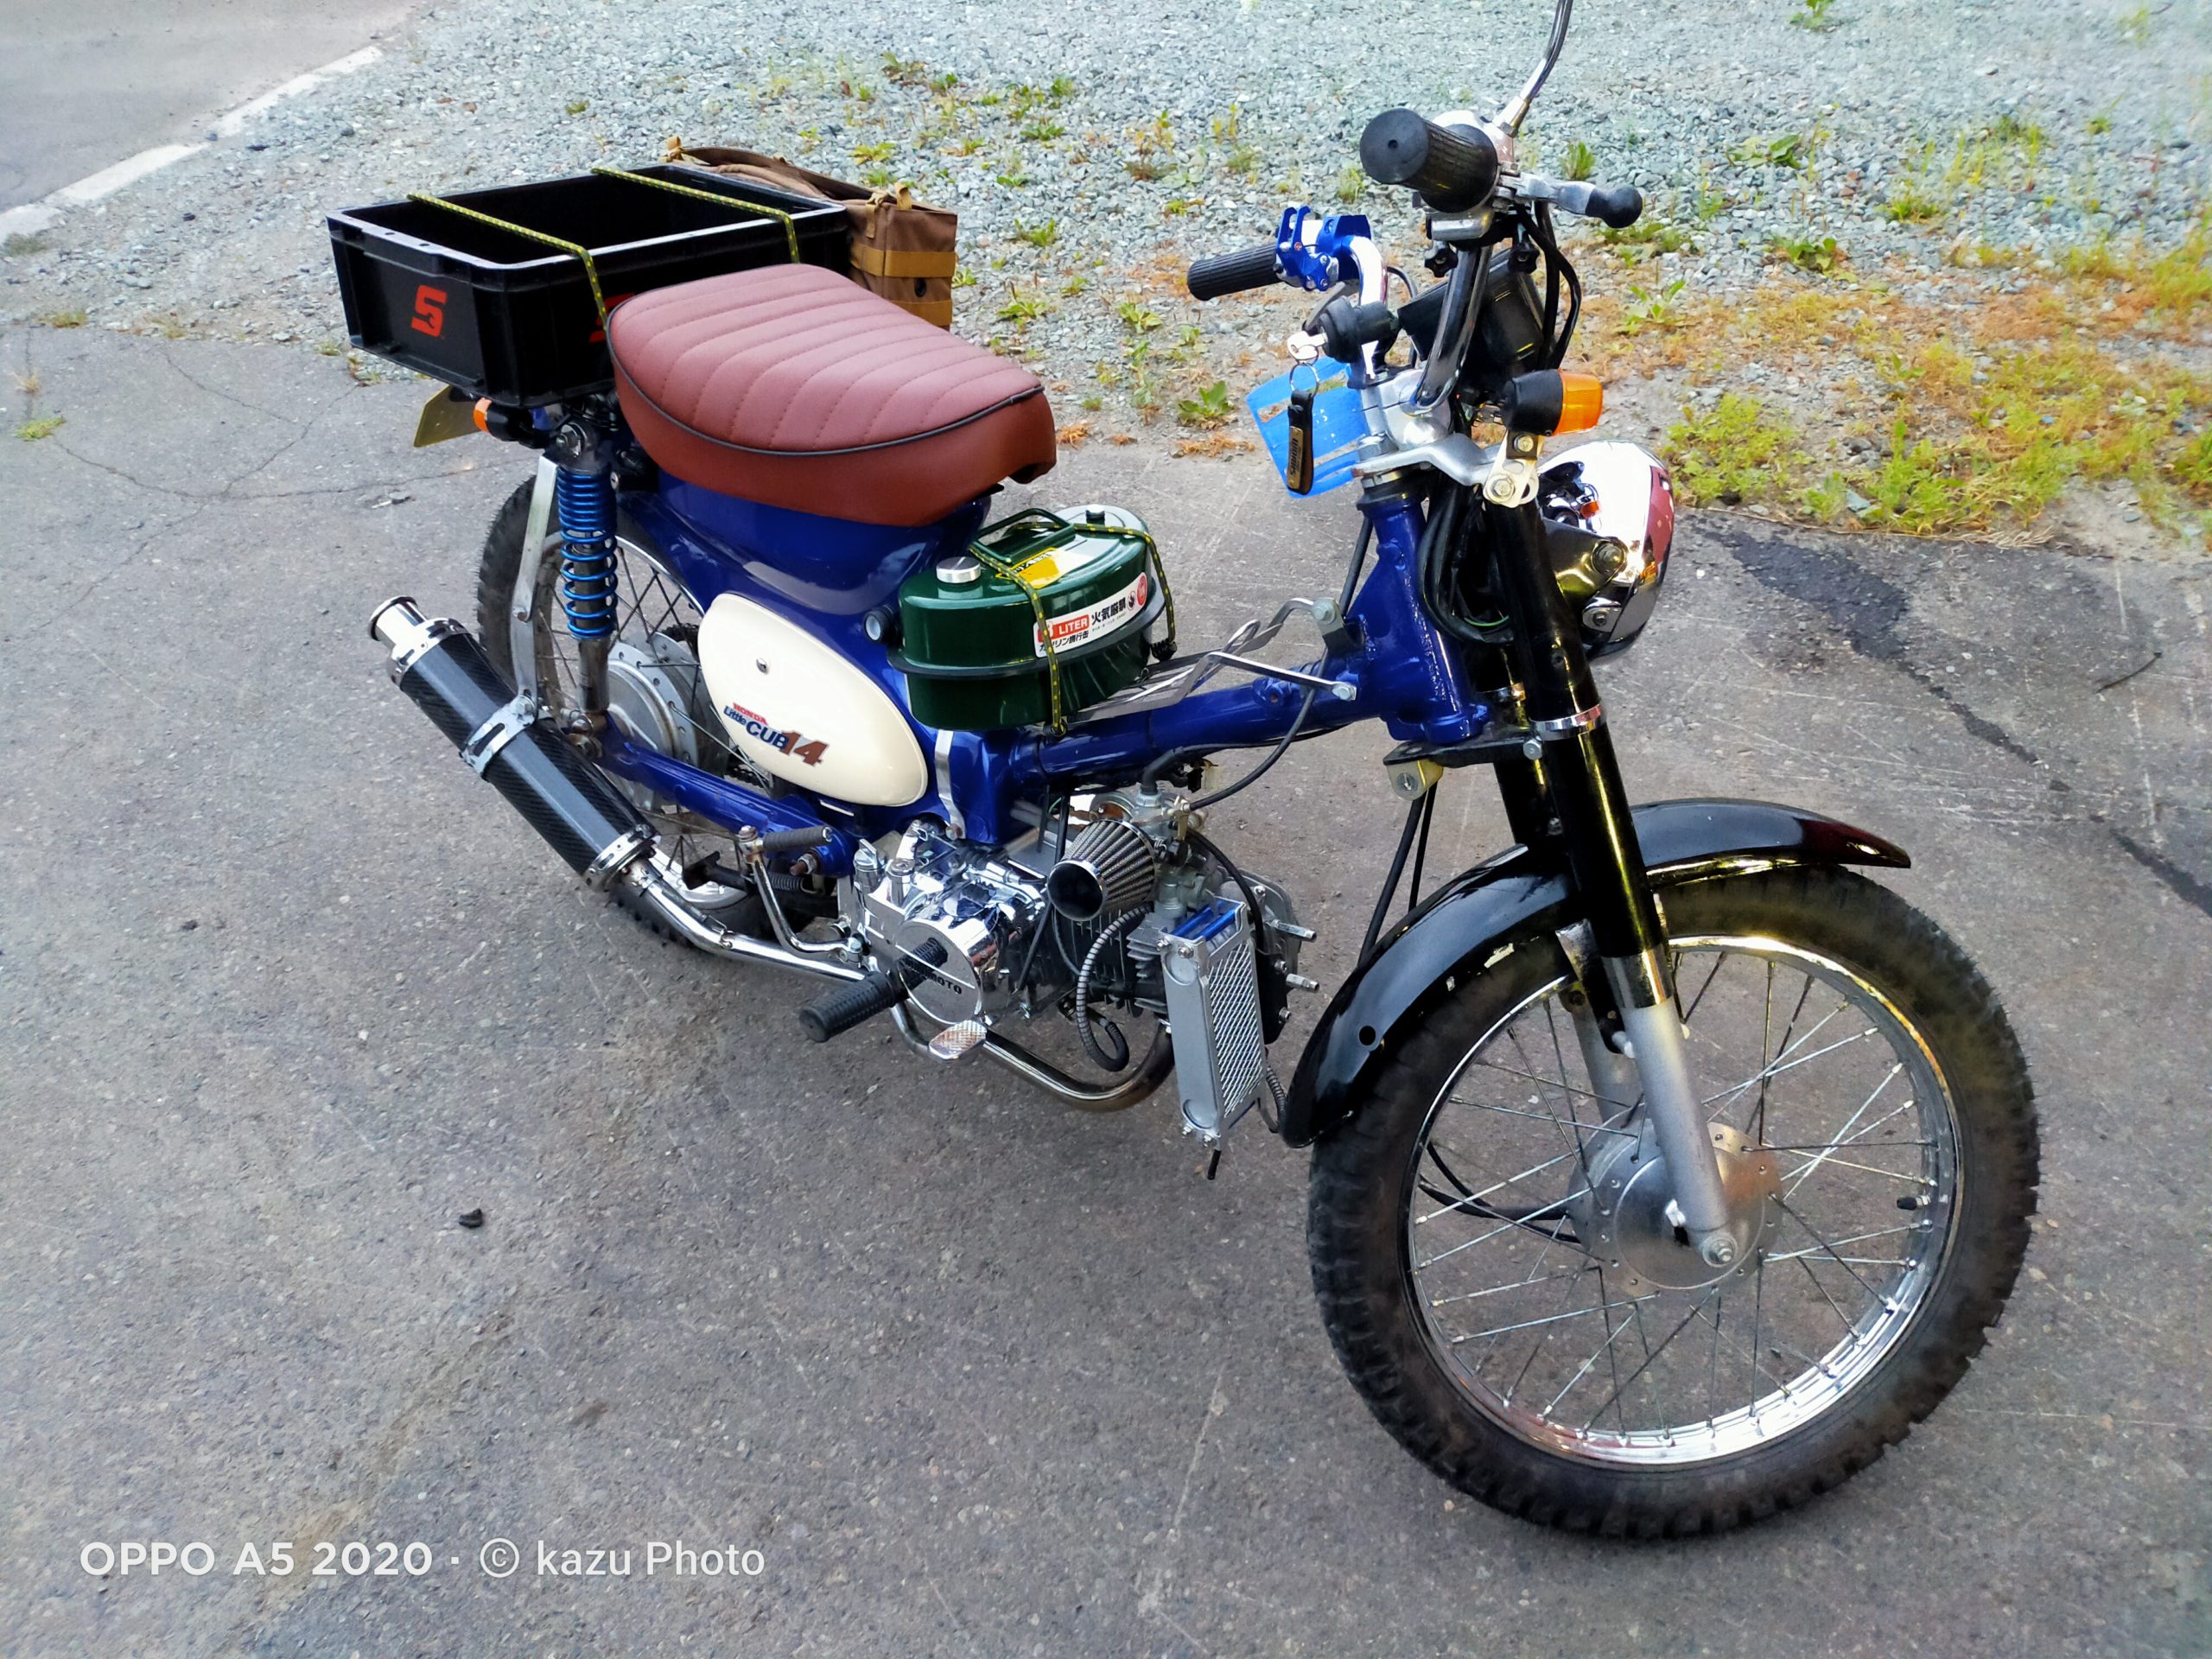 リトルカブのカスタマイズ記録 No 02 キャンプ荷物を積載できるバイクへ Kazu Photo 道楽